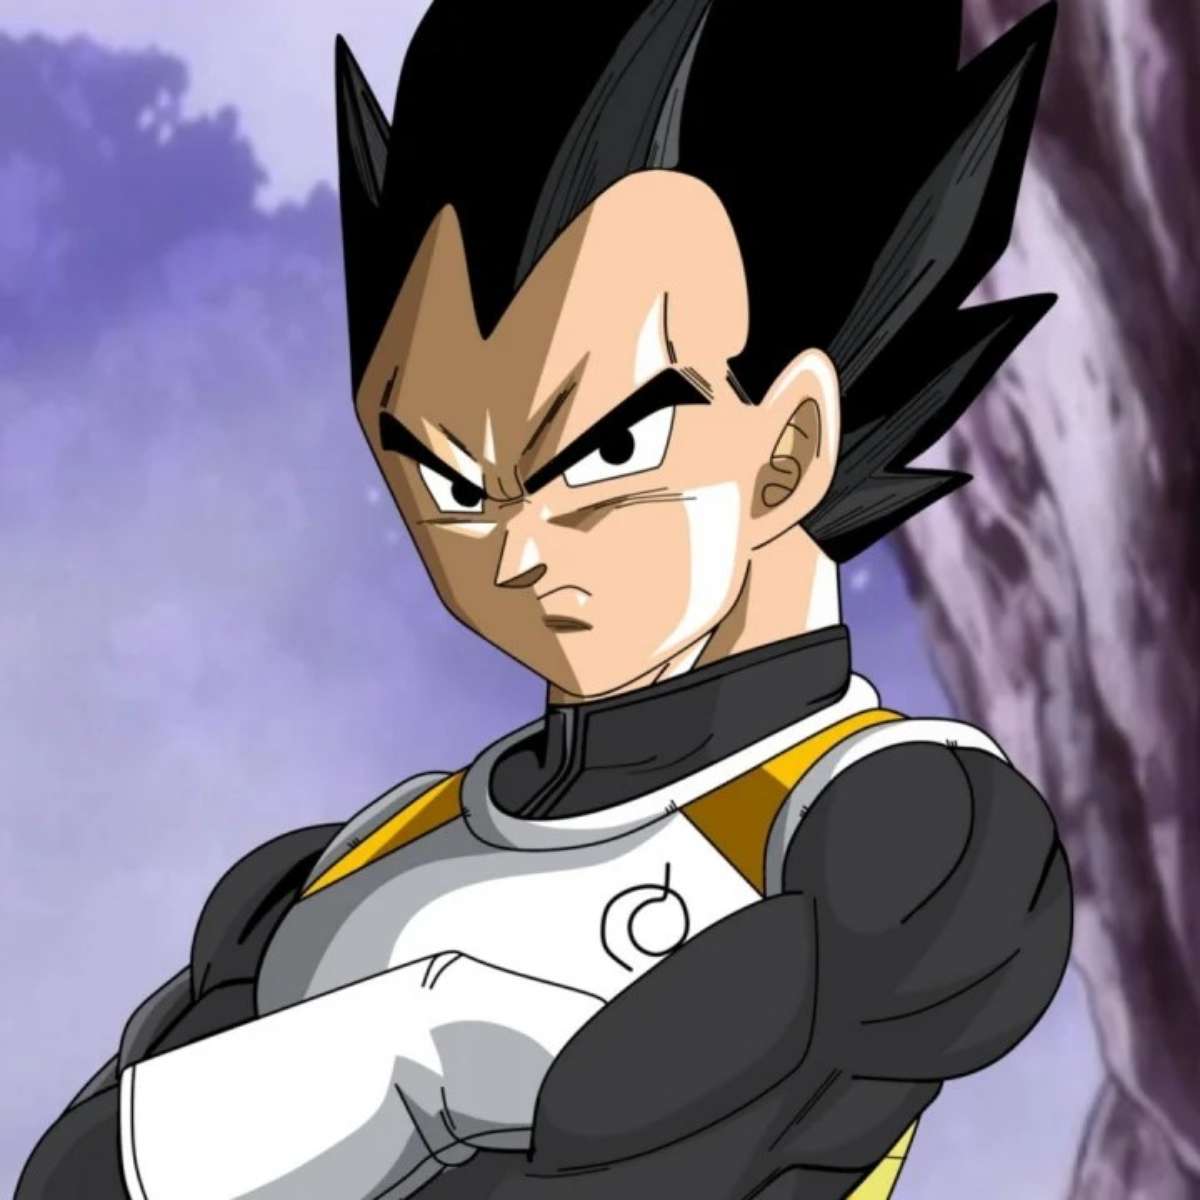 Dragon Ball: Criador revela ator perfeito para interpretar Goku em